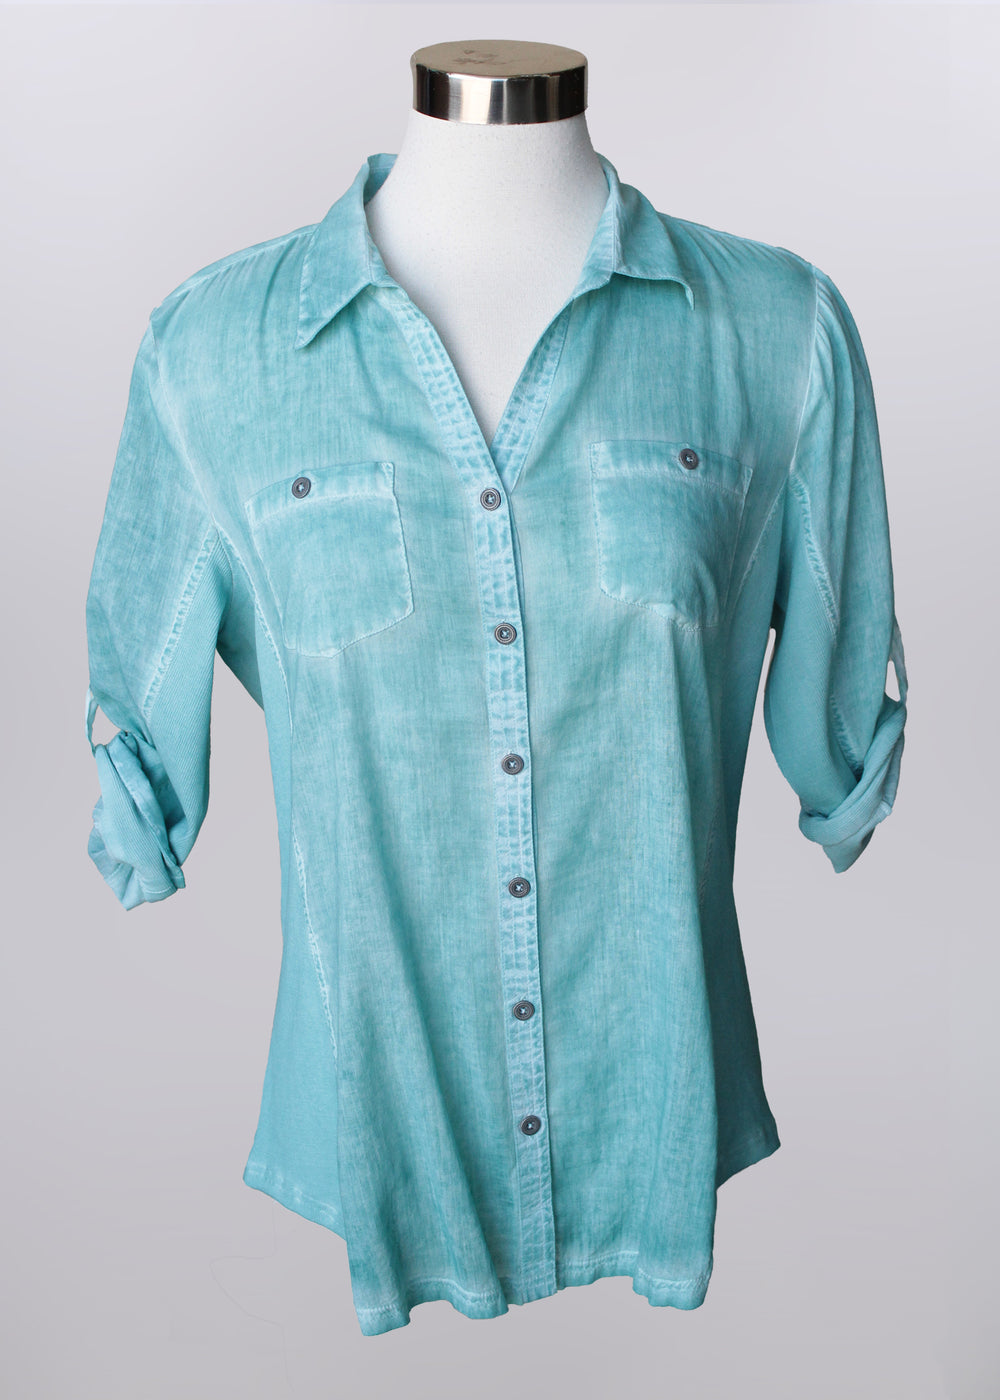 Keren Hart shirt 76020, button front mineral dye